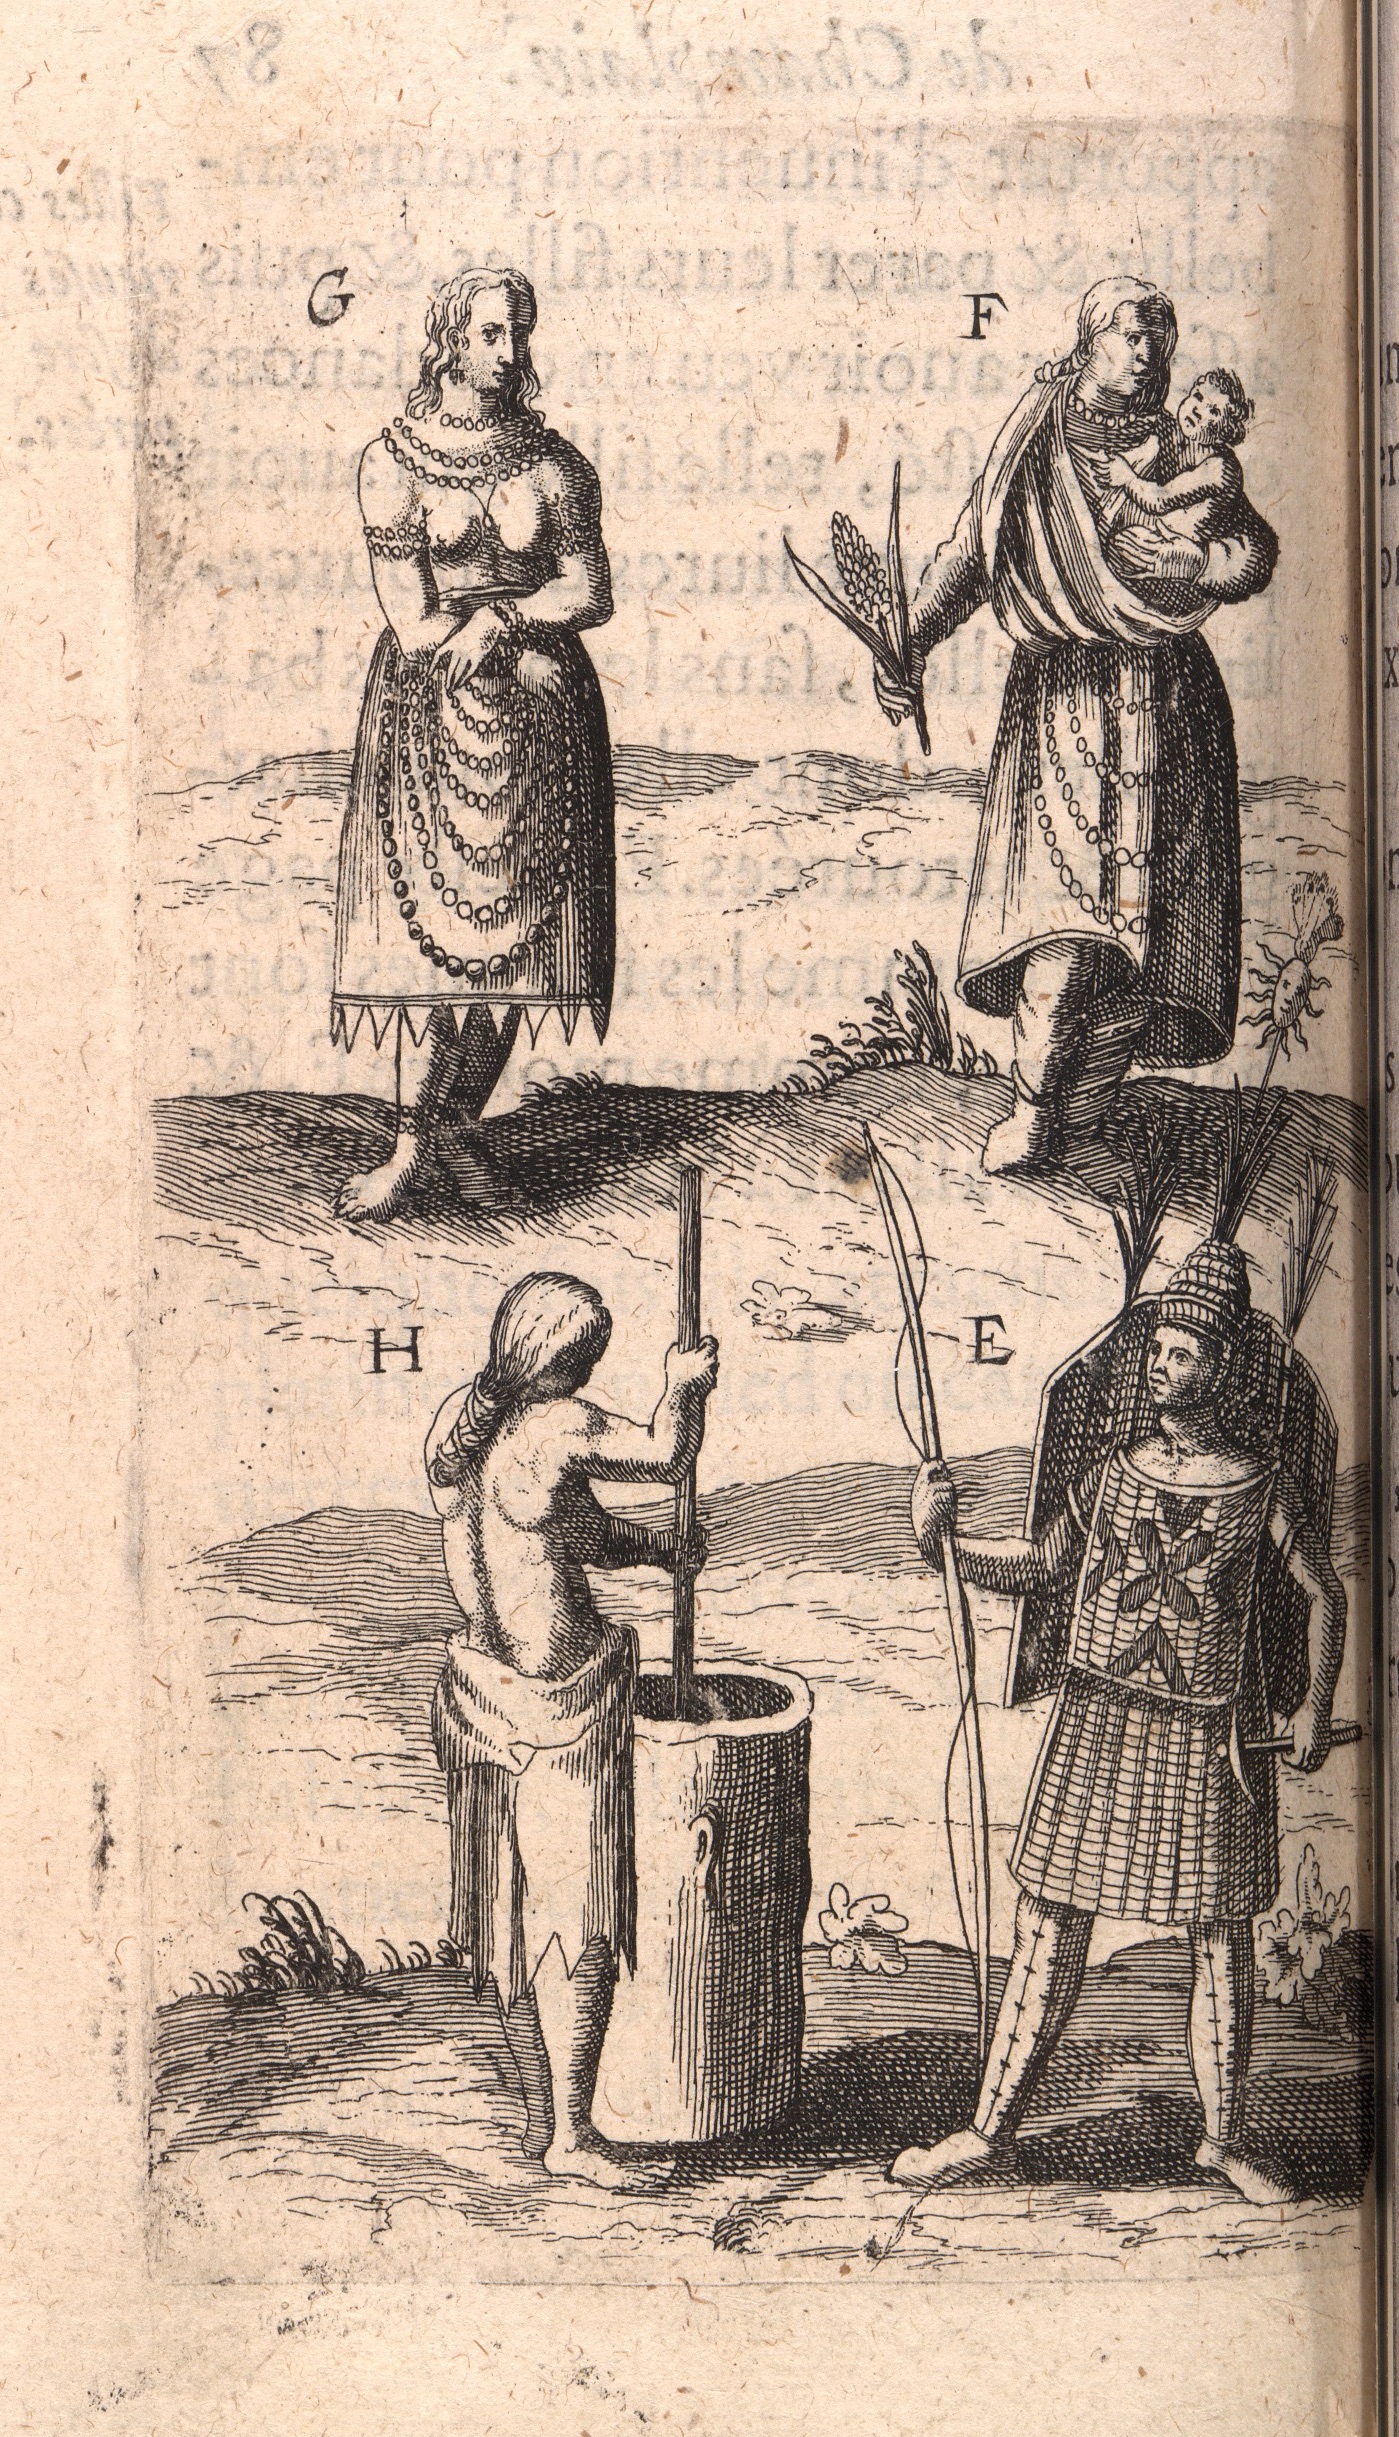 Members of the Huron-Wendat Nation, engraving from Samuel Champlain, Voyages et decouvertes faites en la nouvelle France... (Paris 1619), opp. p. 87 [Dechert FC6 C3587 619v]